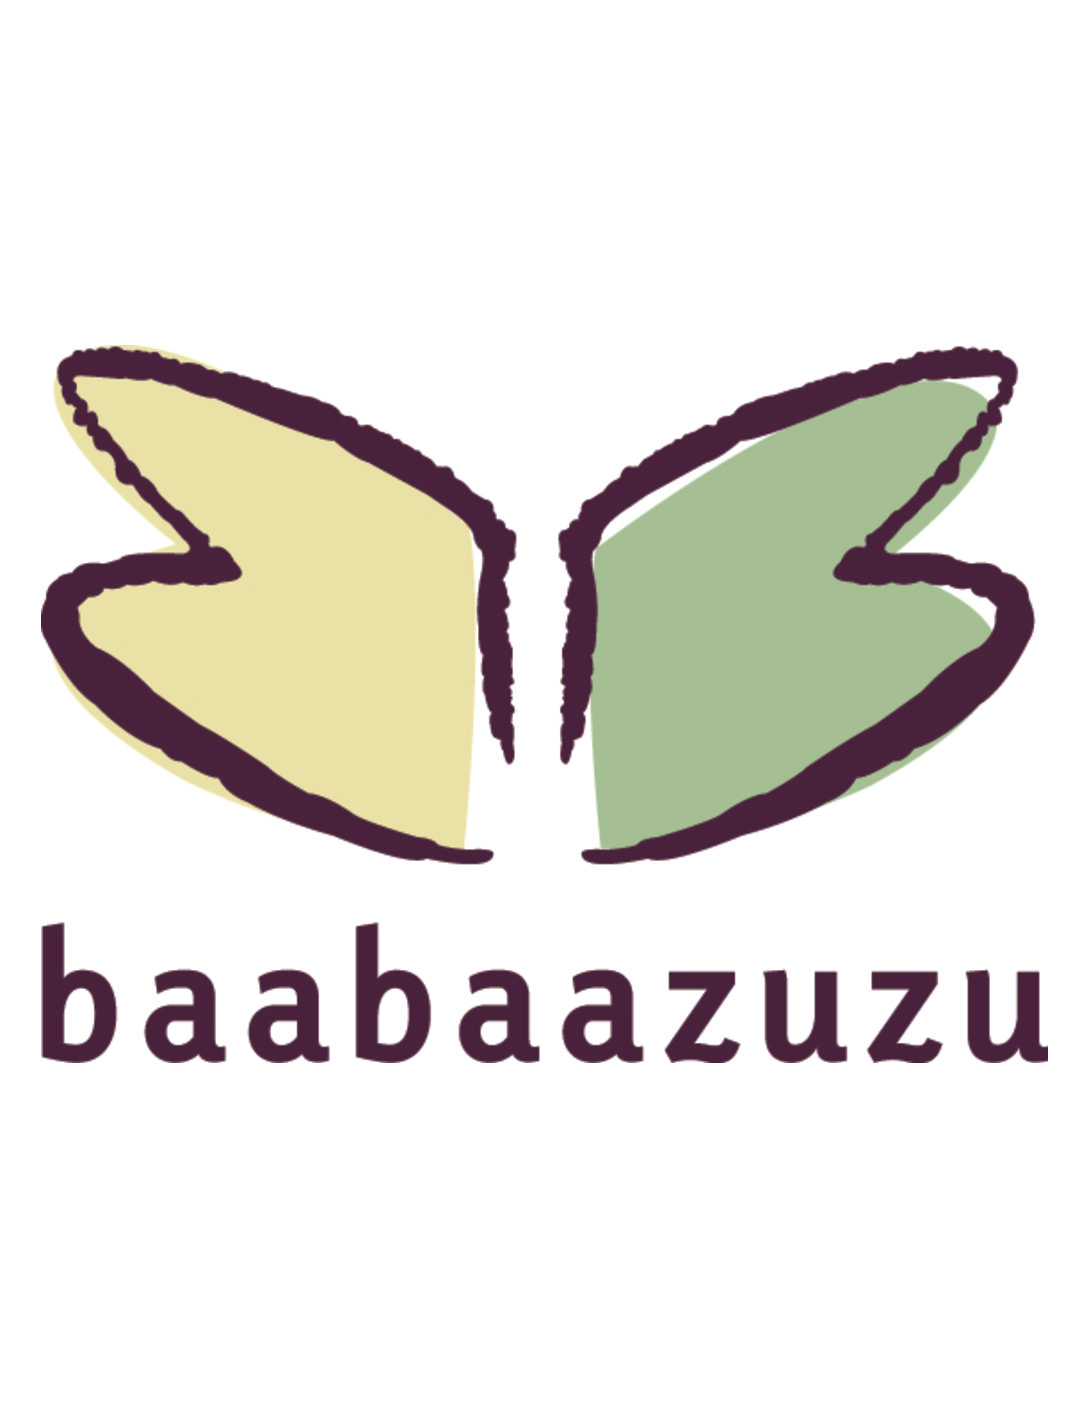 Baabaazuzu Testimonial